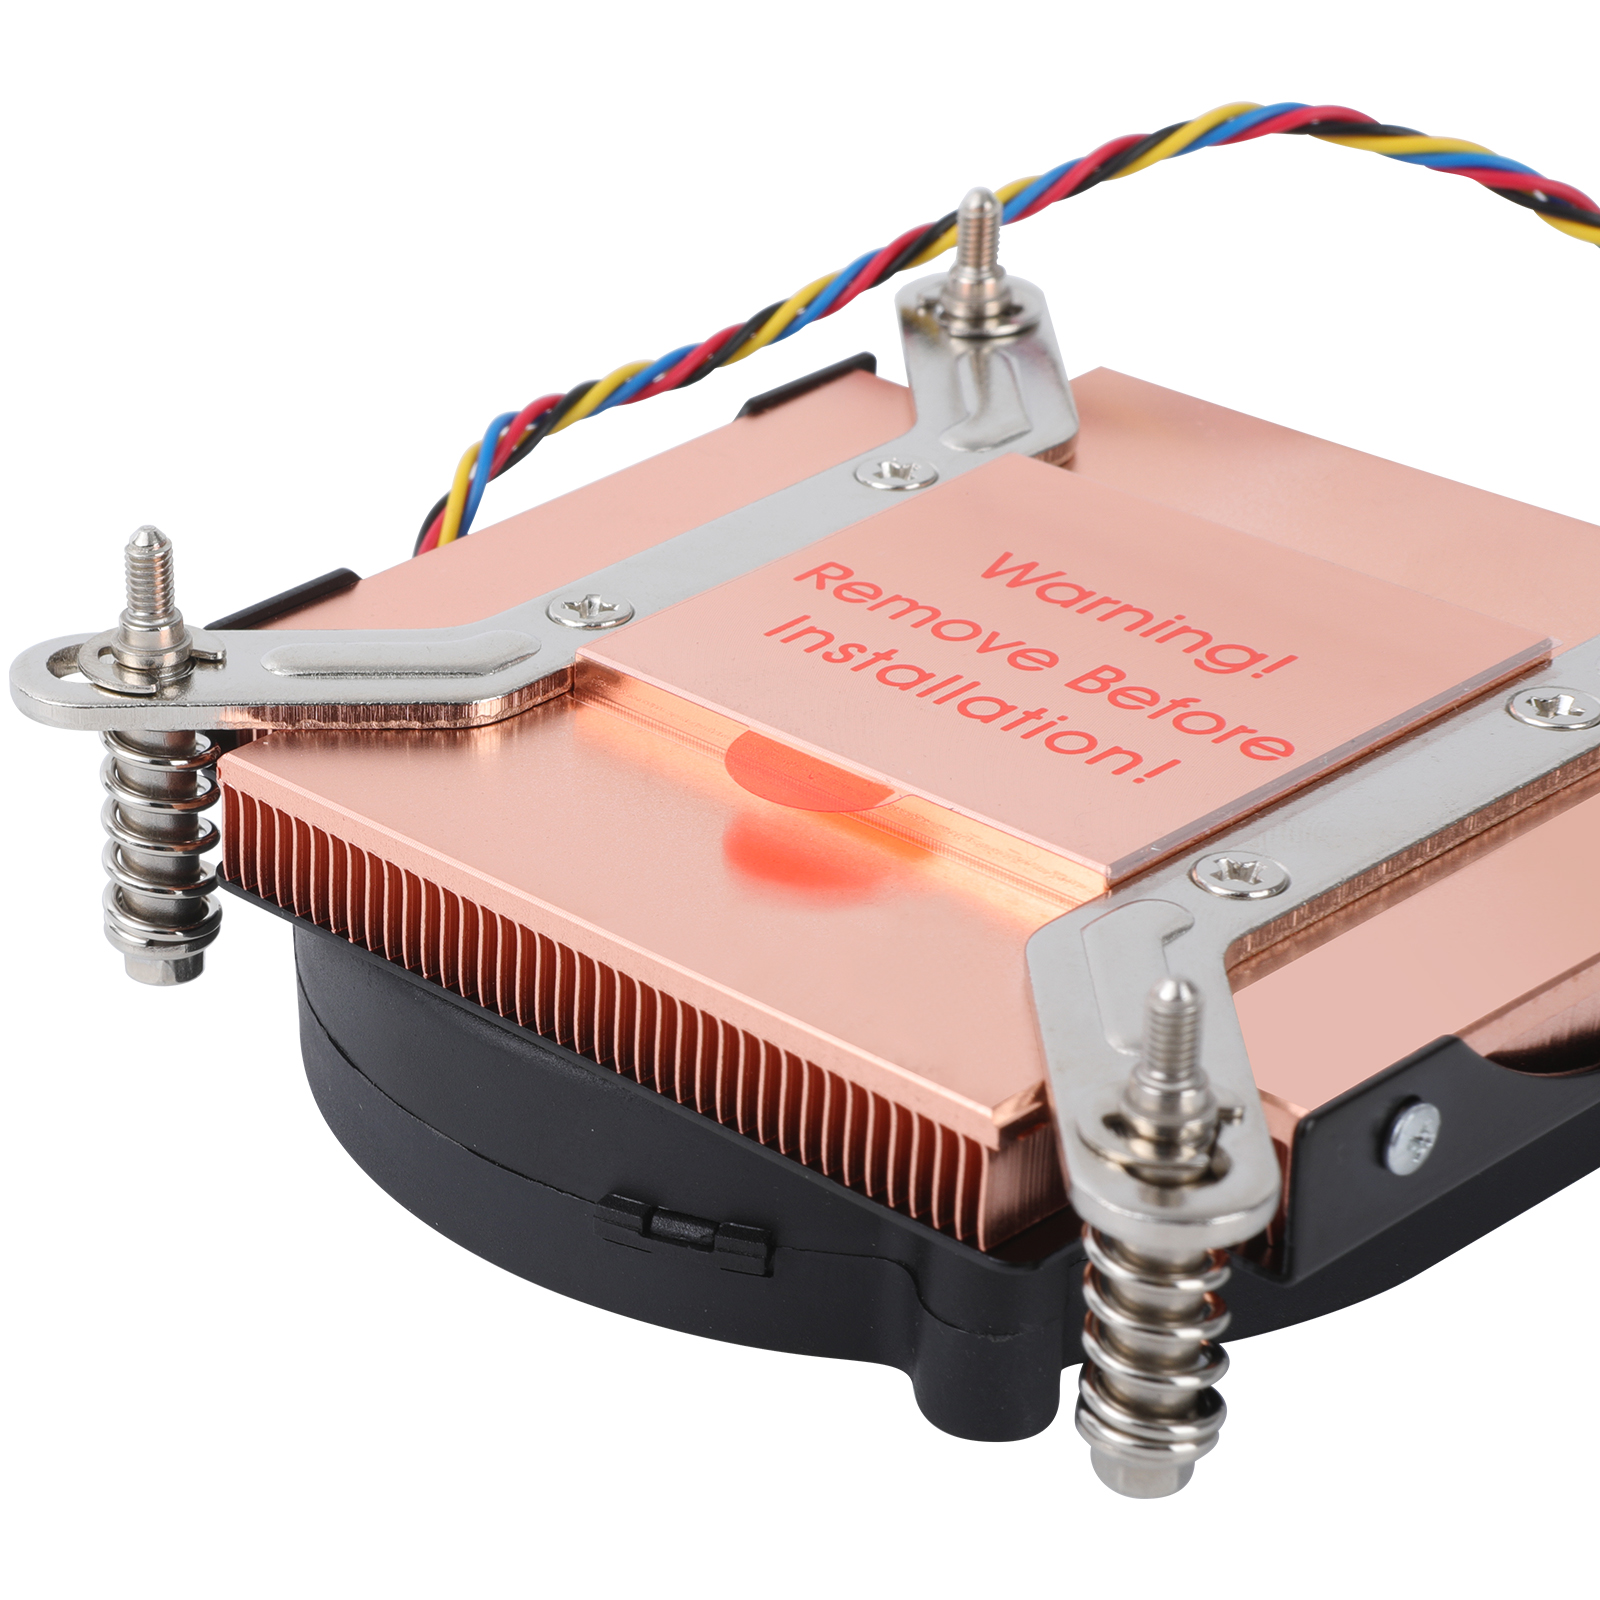  1U CPU w/ Copper heatsink support intel LGA 115x socket 